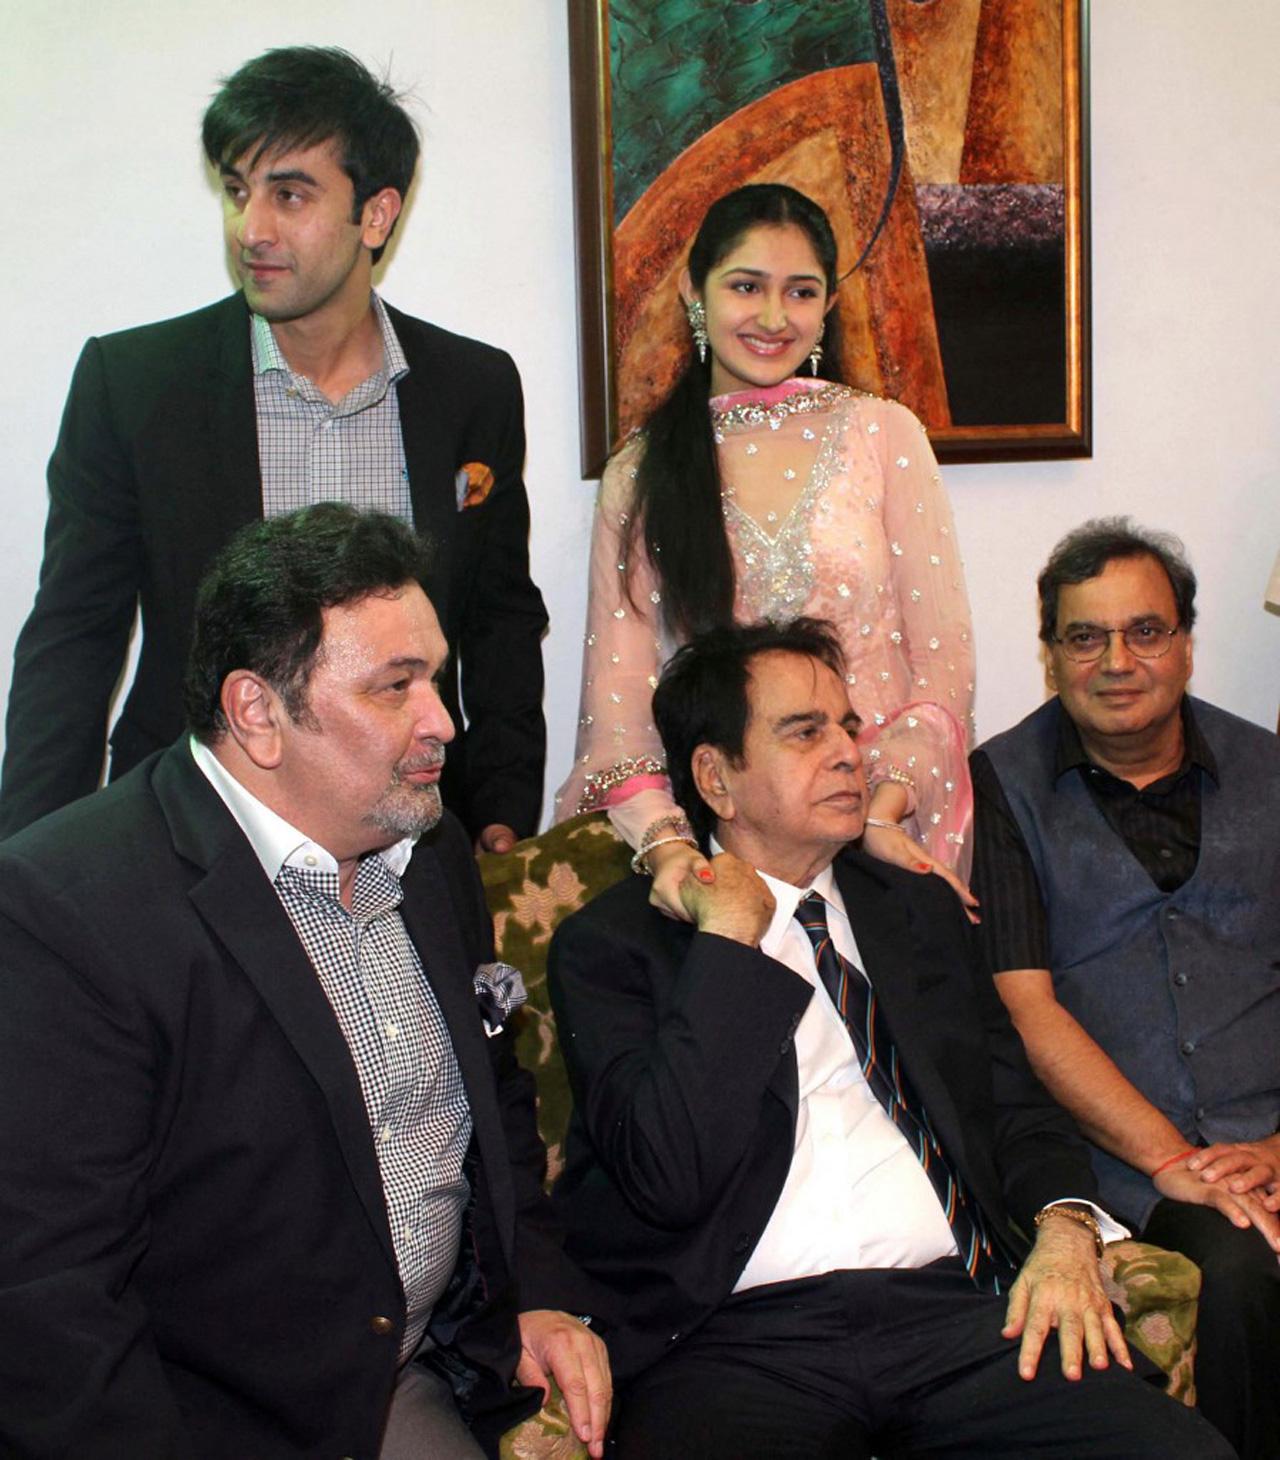 Ranbir Kapoor, Rishi Kapoor, Dilip Kumar, Sayyeshaa, and Subhash Ghai at Kumar's 89th birthday celebrations on December 11, 2011, in Mumbai